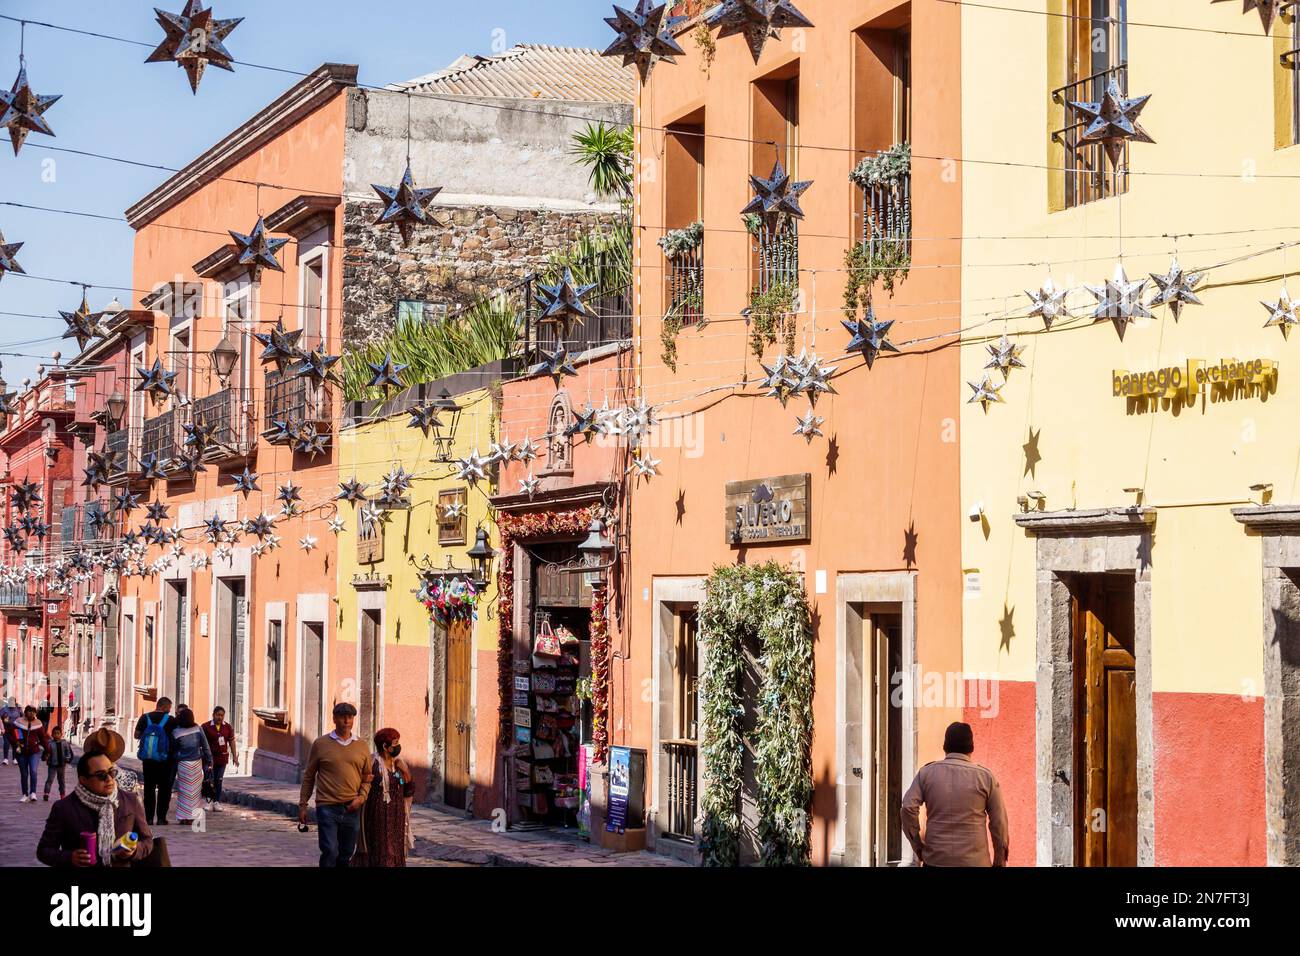 San Miguel de Allende Guanajuato Mexiko, historisches Zentrum von Historico Central Zona Centro, hängende Stars Weihnachtsdekoration, koloniale Architektur, man Me Stockfoto